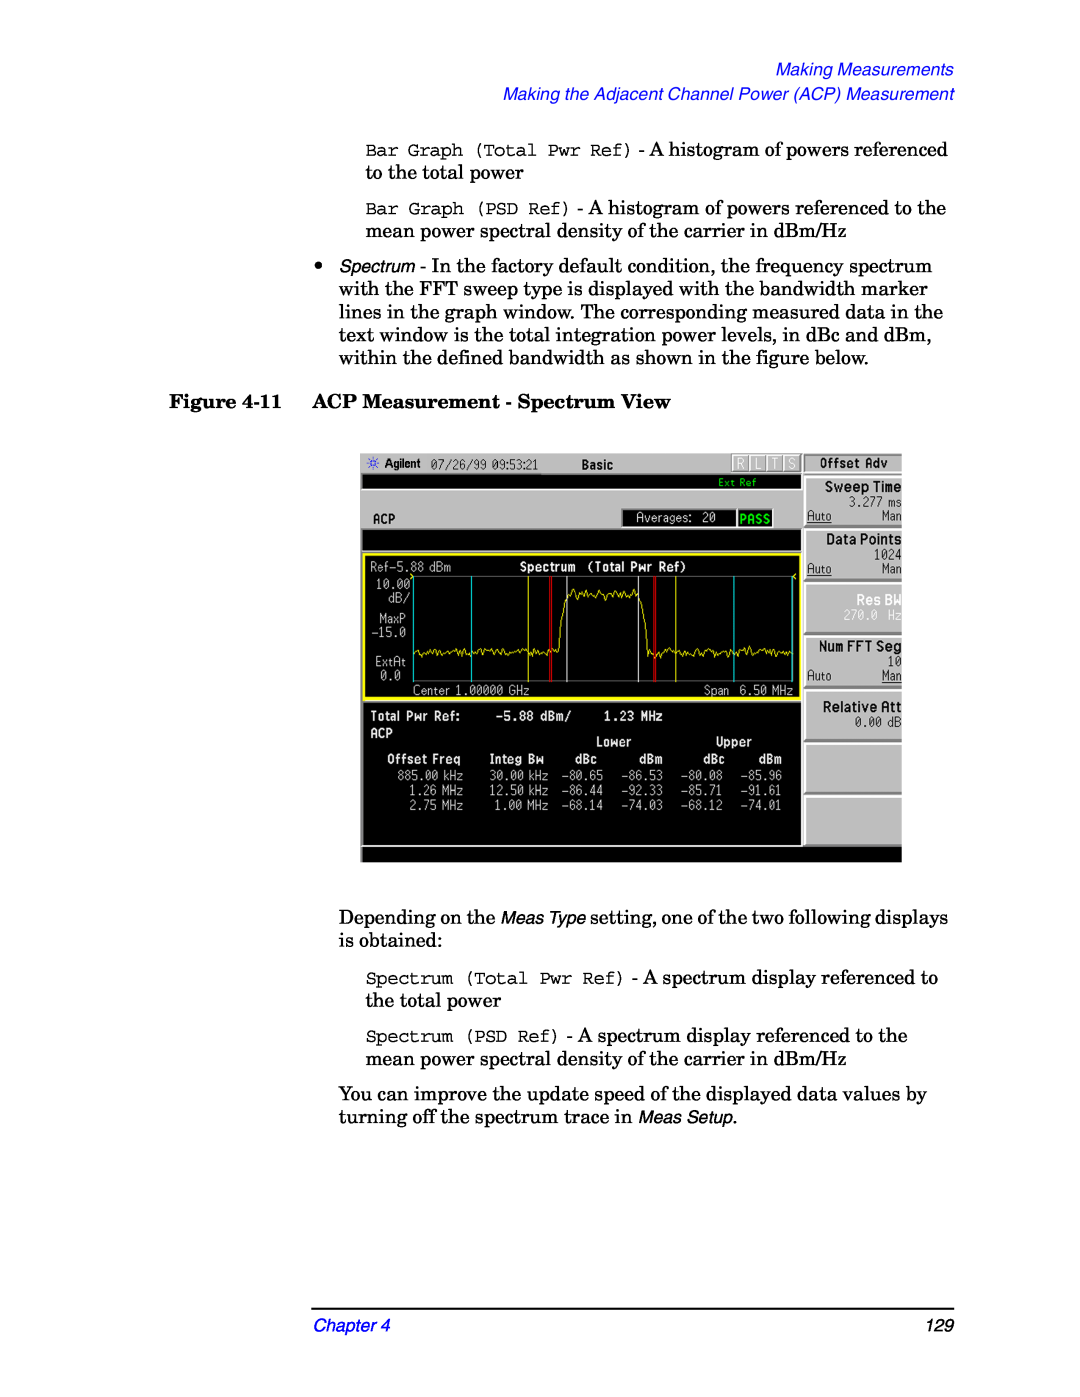 Agilent Technologies E4406A manual 11ACP Measurement - Spectrum View, Making Measurements, Chapter 